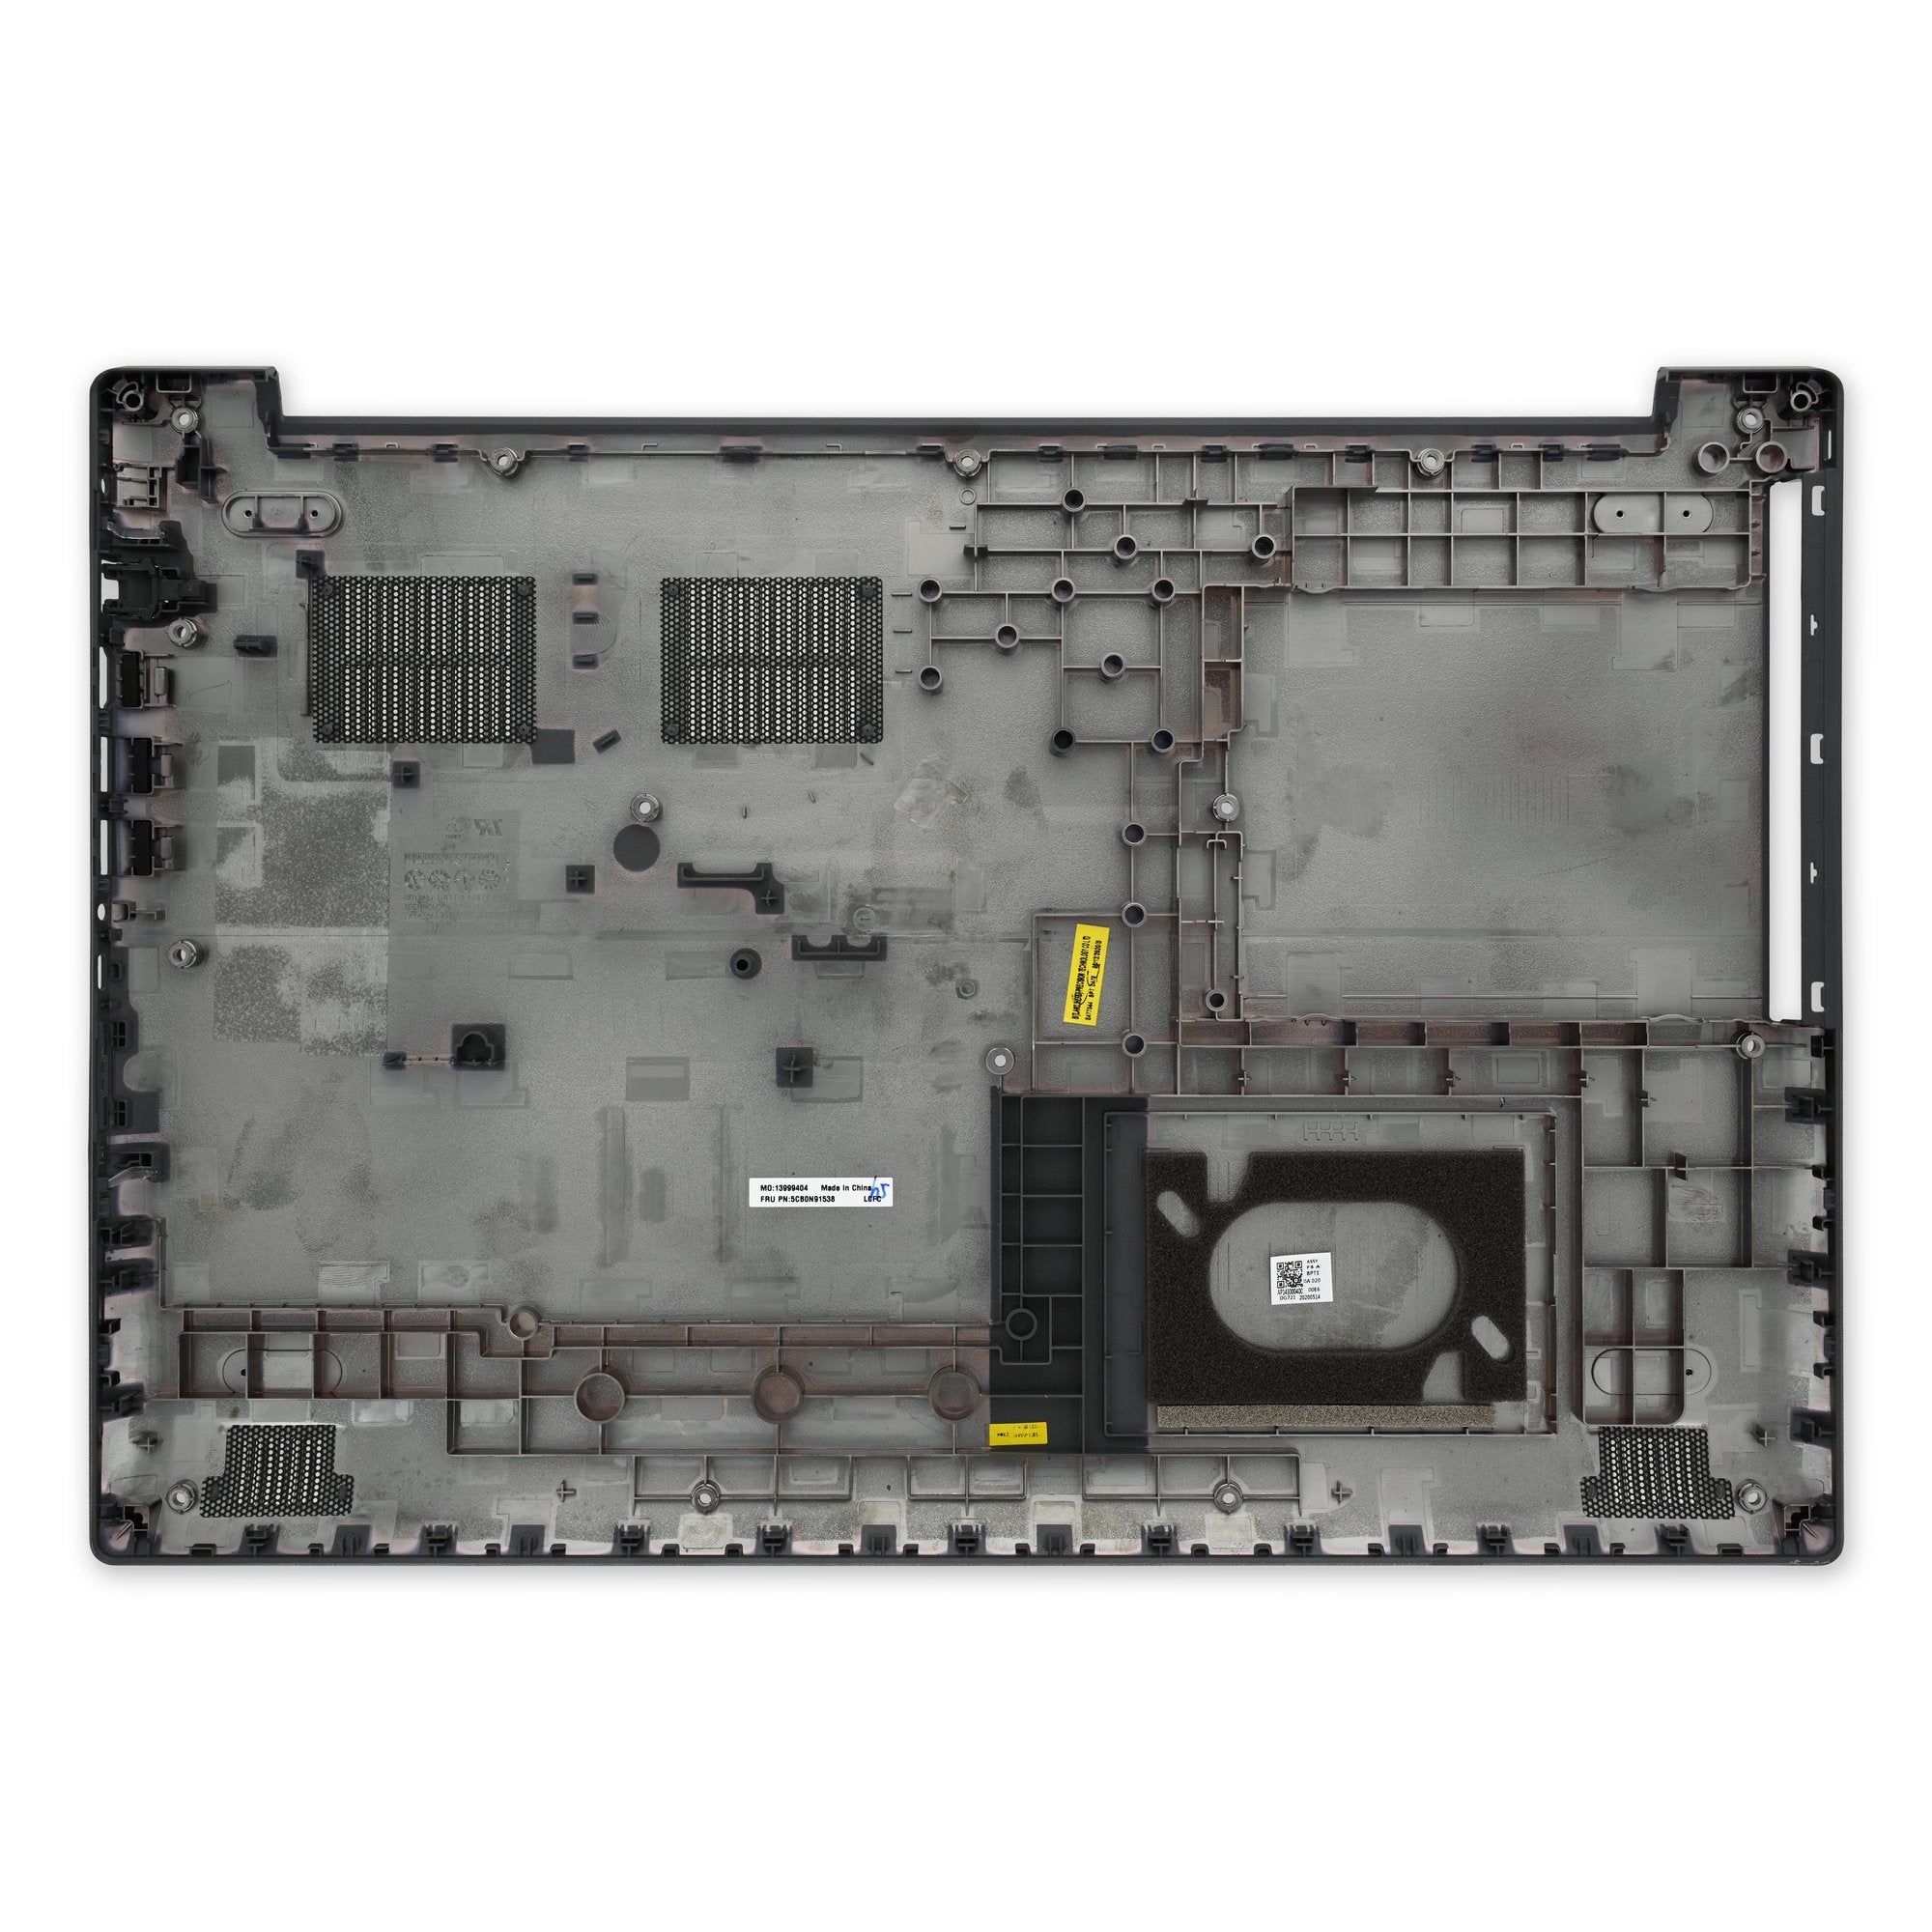 Lenovo V320-17 and IdeaPad 320-17 Lower Case New